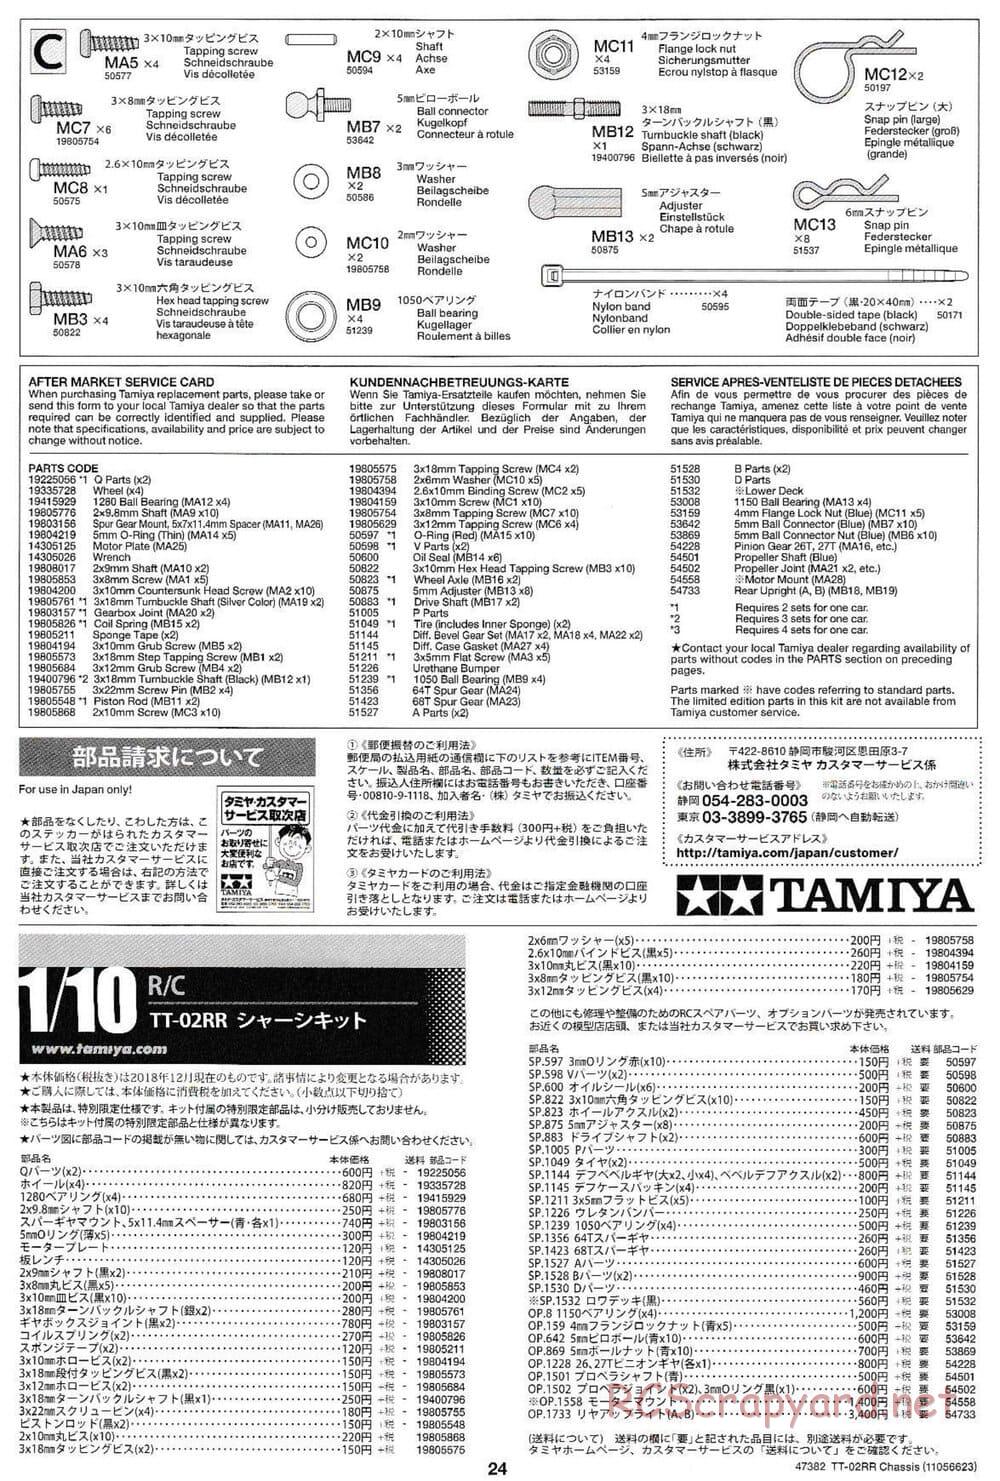 Tamiya - TT-02RR Chassis - Manual - Page 24